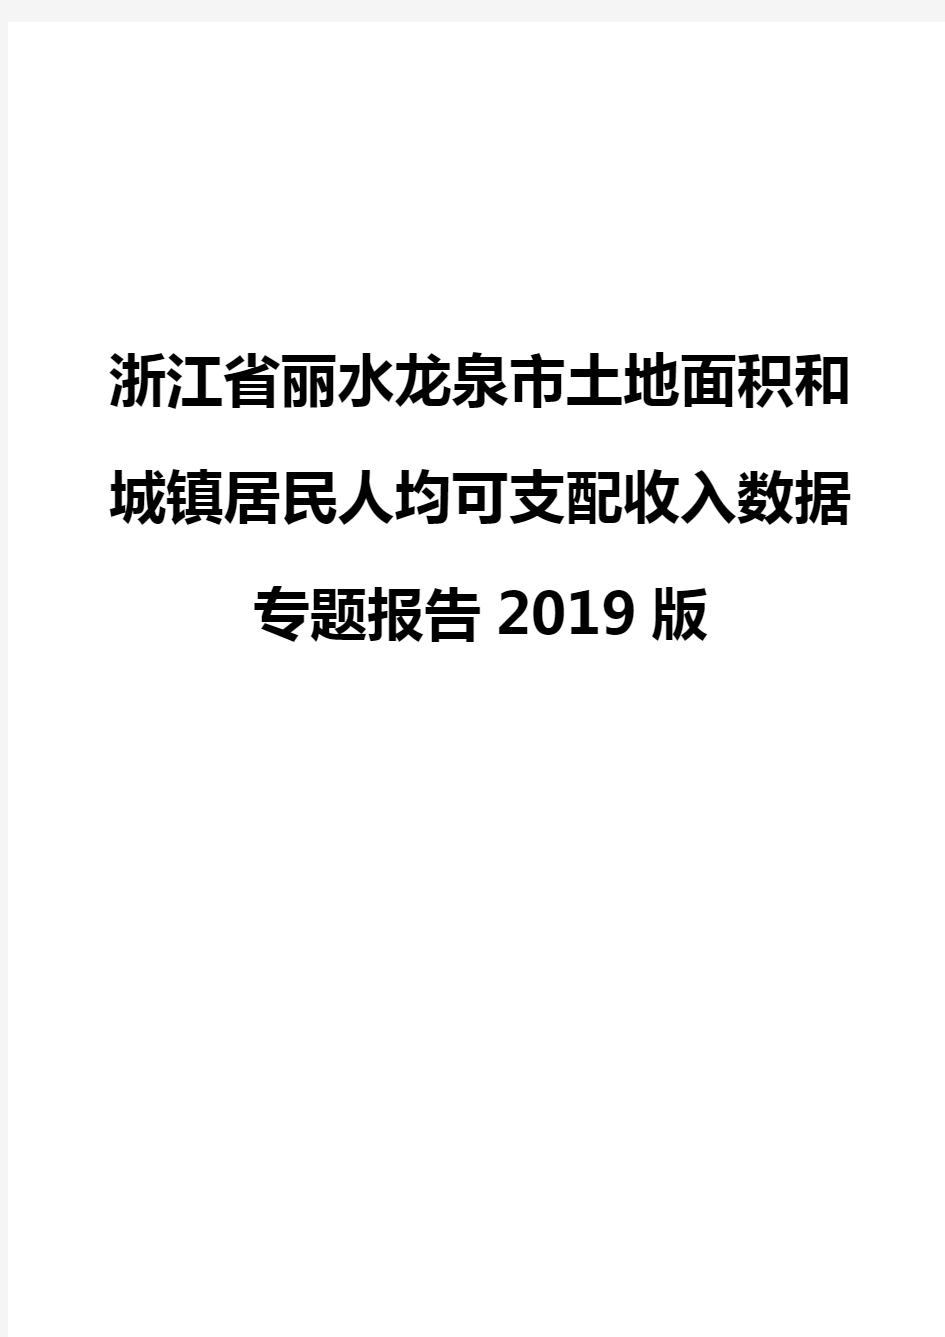 浙江省丽水龙泉市土地面积和城镇居民人均可支配收入数据专题报告2019版